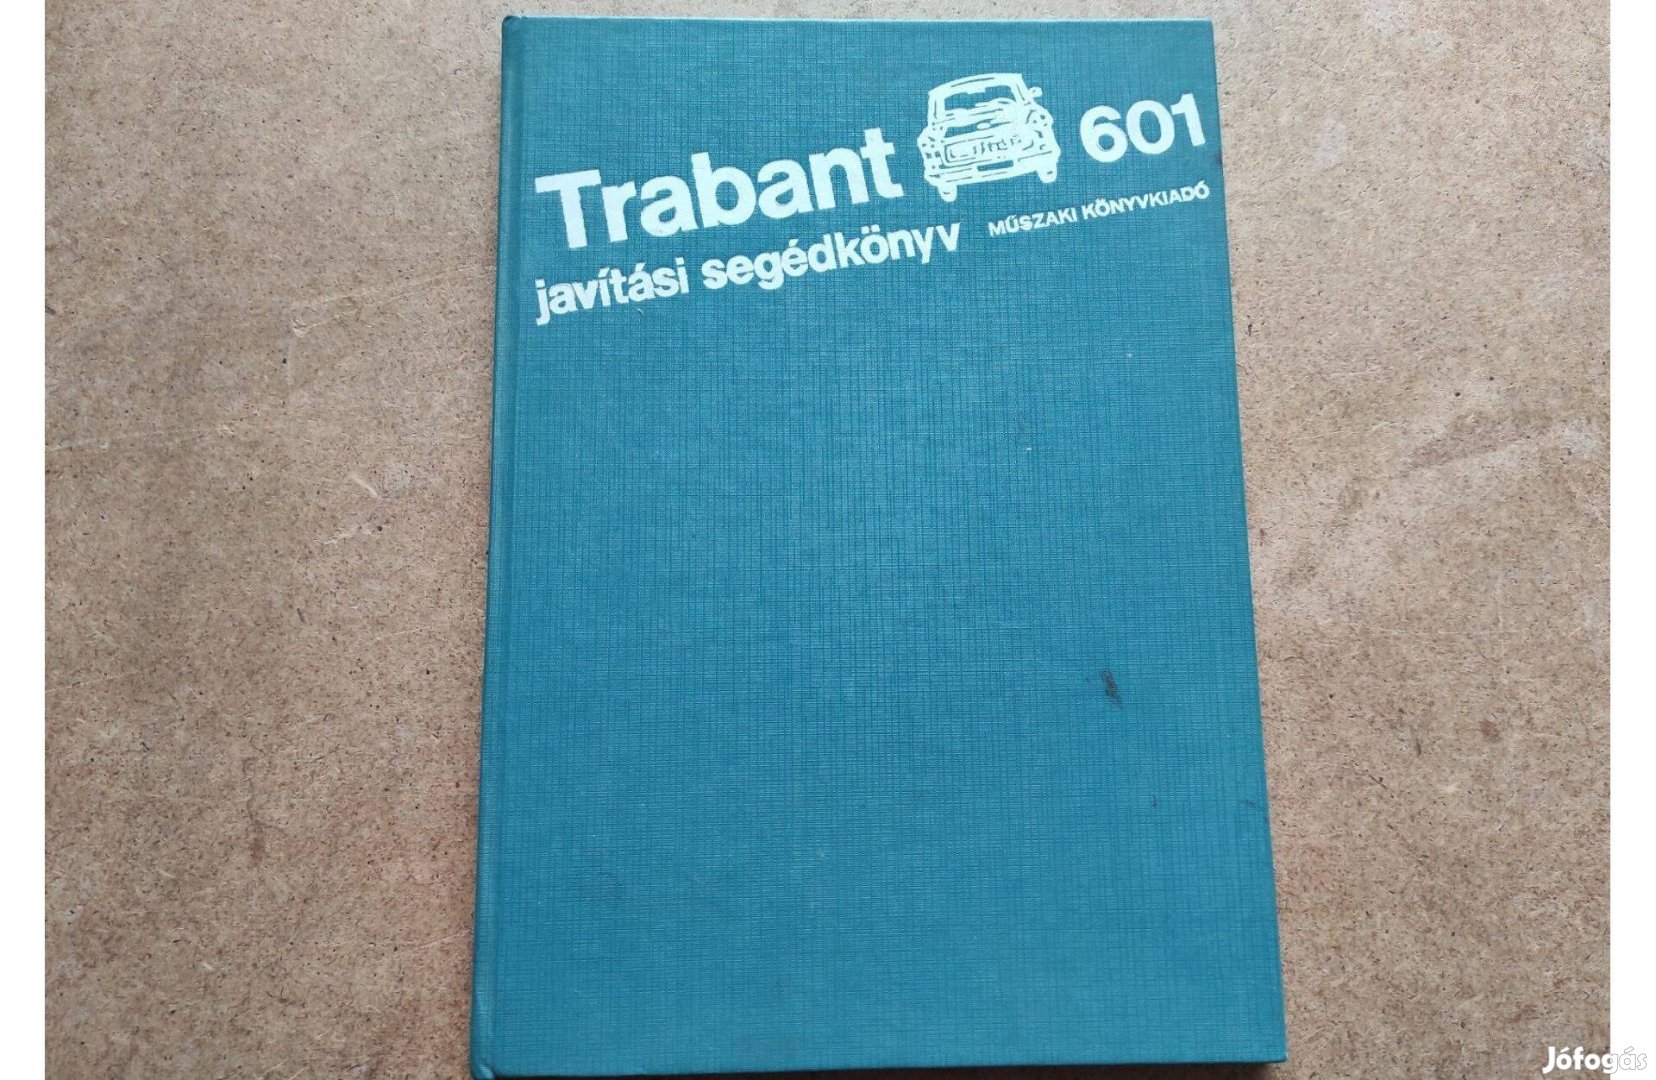 Trabant 601 javítási karbantartási könyv